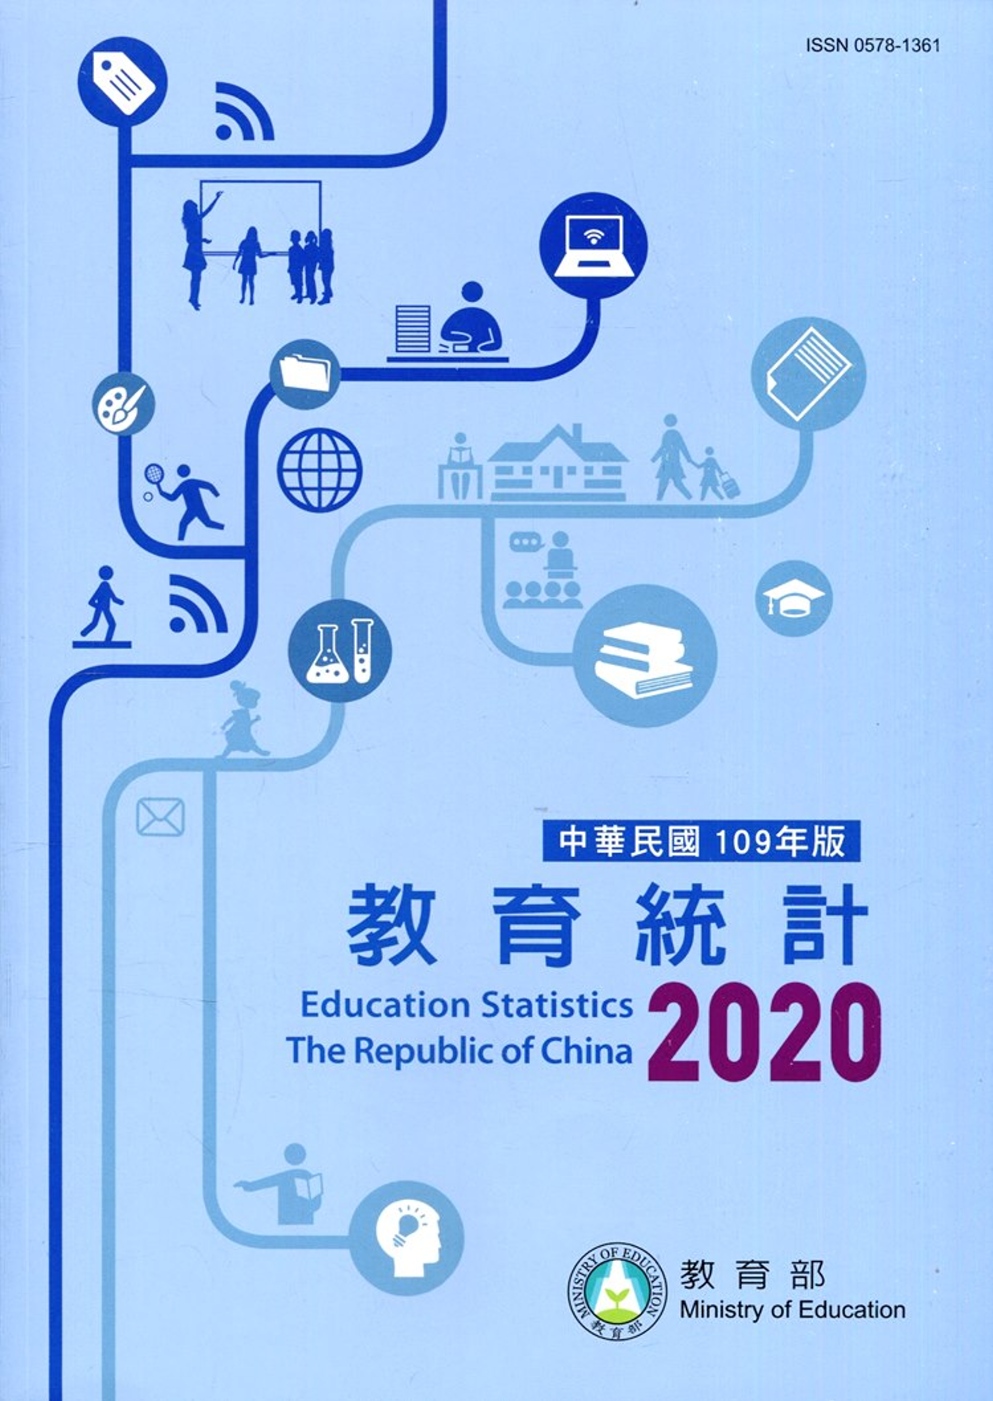 中華民國教育統計109年